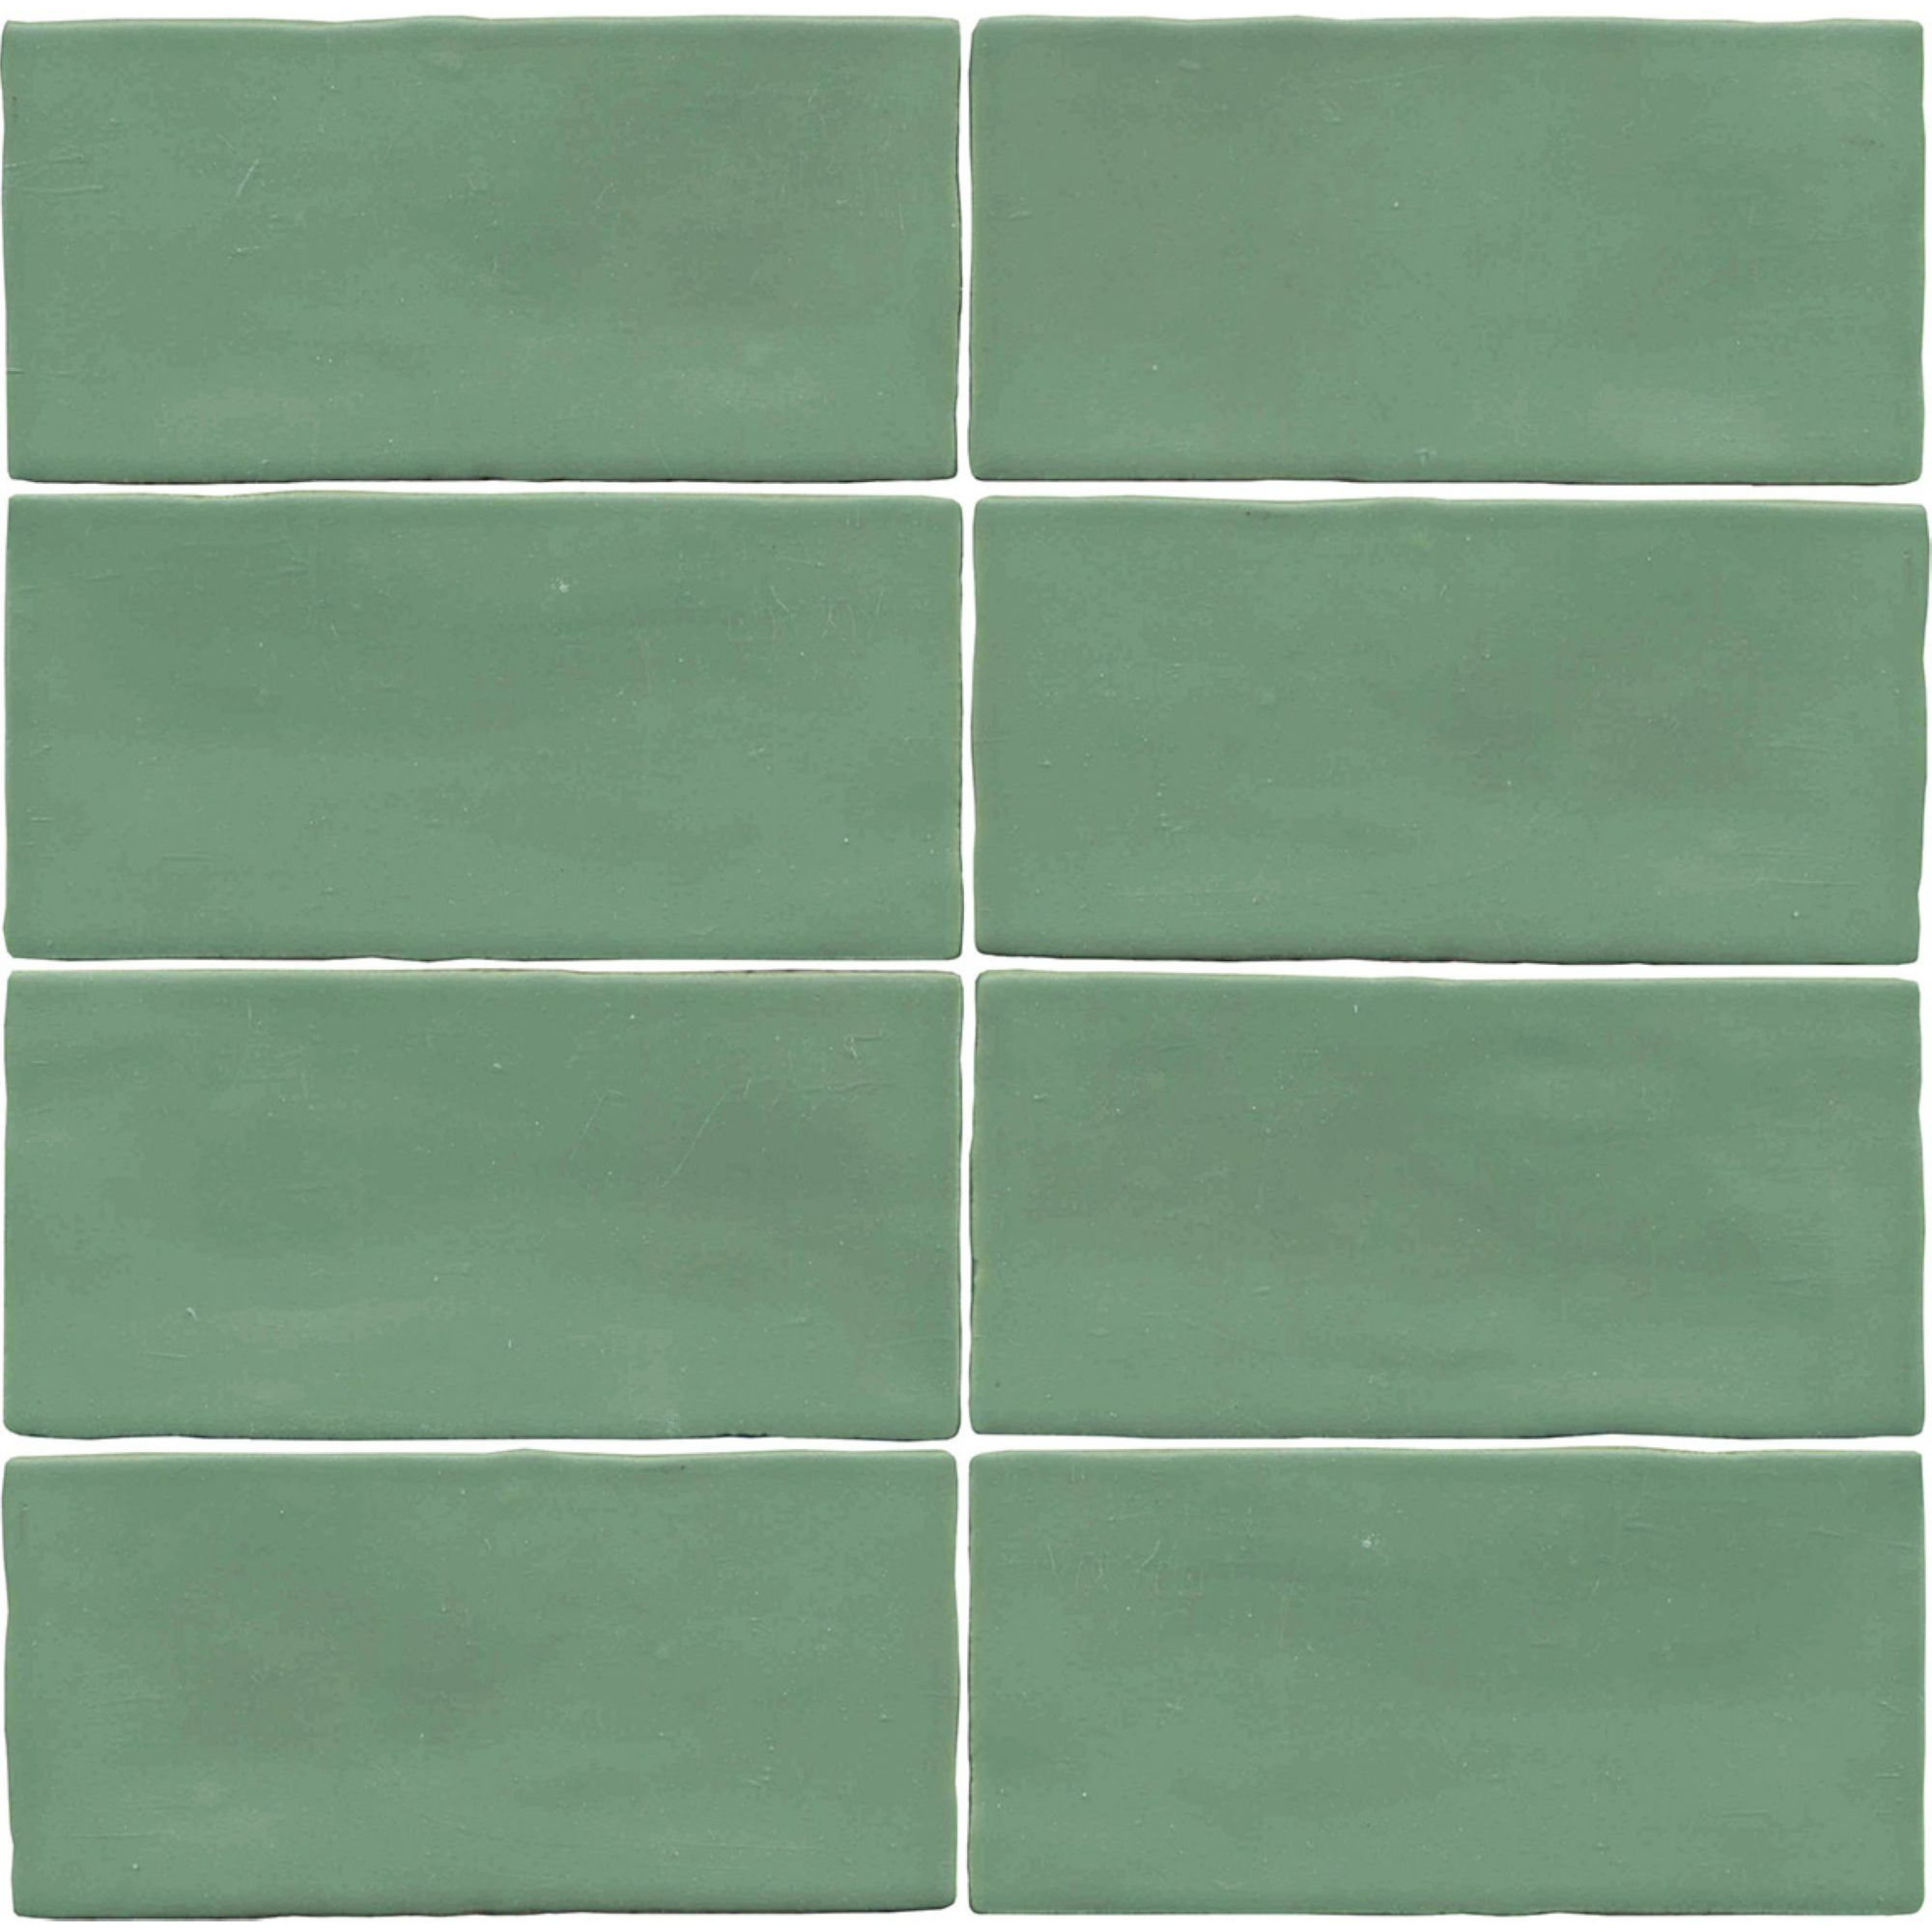 Wandfliese 'Crayon' grün matt 6,5 x 13 cm + product picture